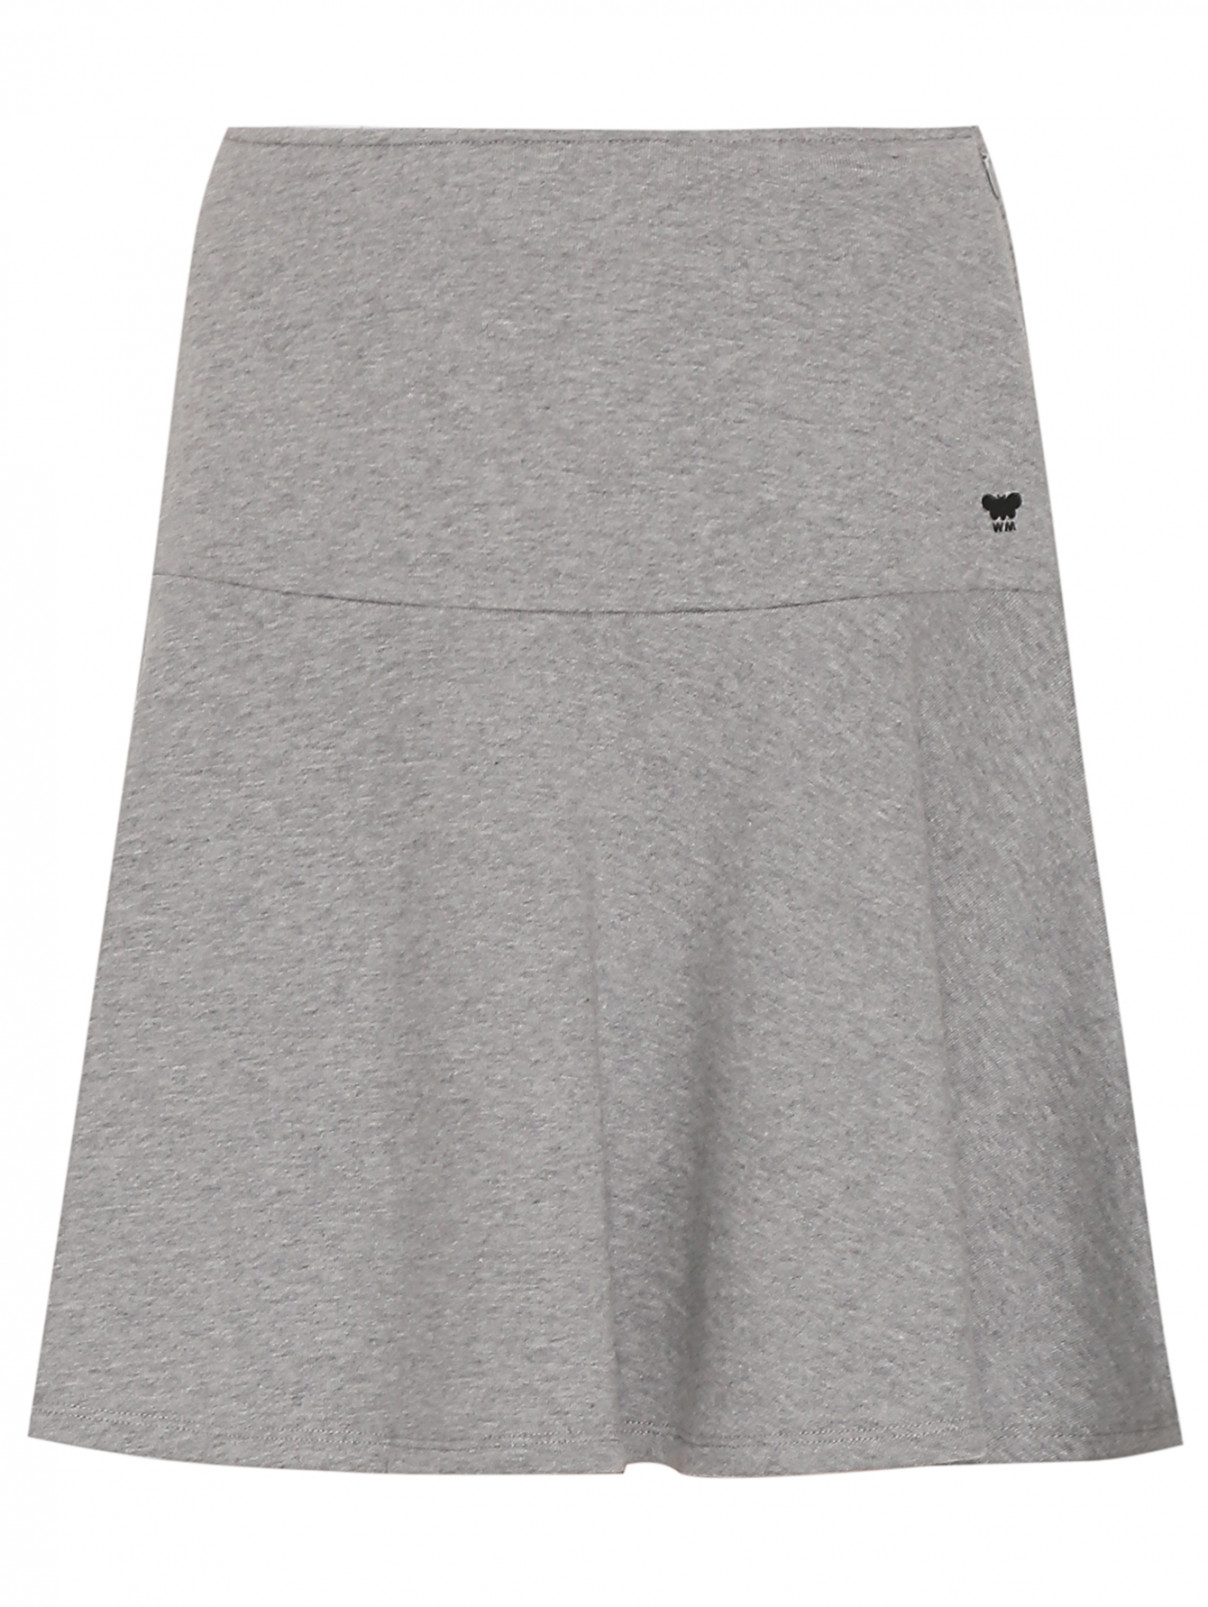 Трикотажная юбка-мини из хлопка Weekend Max Mara  –  Общий вид  – Цвет:  Серый